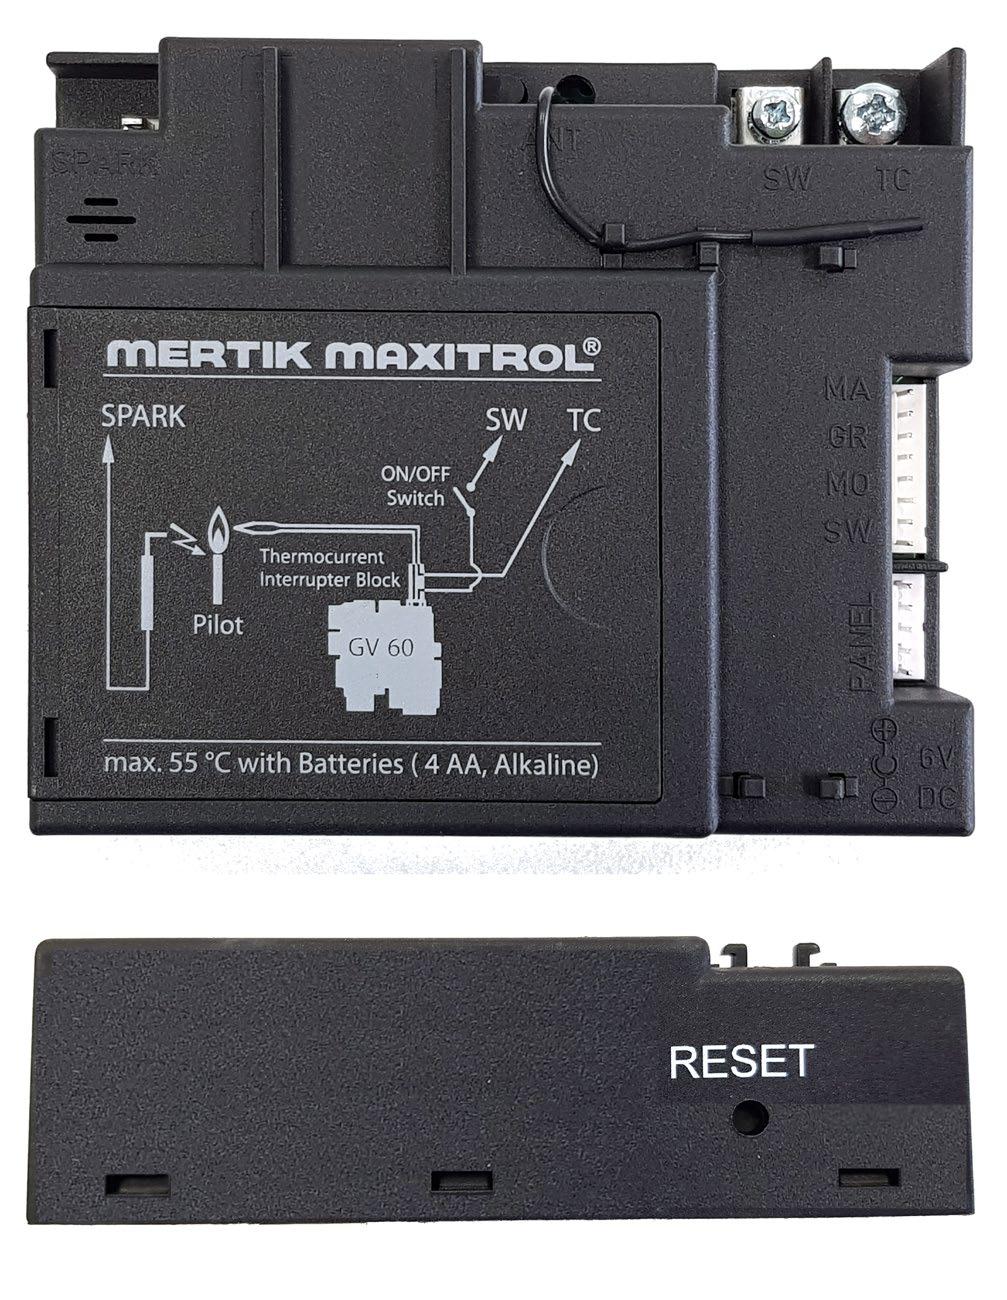 De ontvanger en de afstandsbediening worden gevoed door batterijen. Voor de ontvanger zijn 4 penlite (type AA) batterijen nodig; voor de afstandsbediening 2 penlites (type AAA).